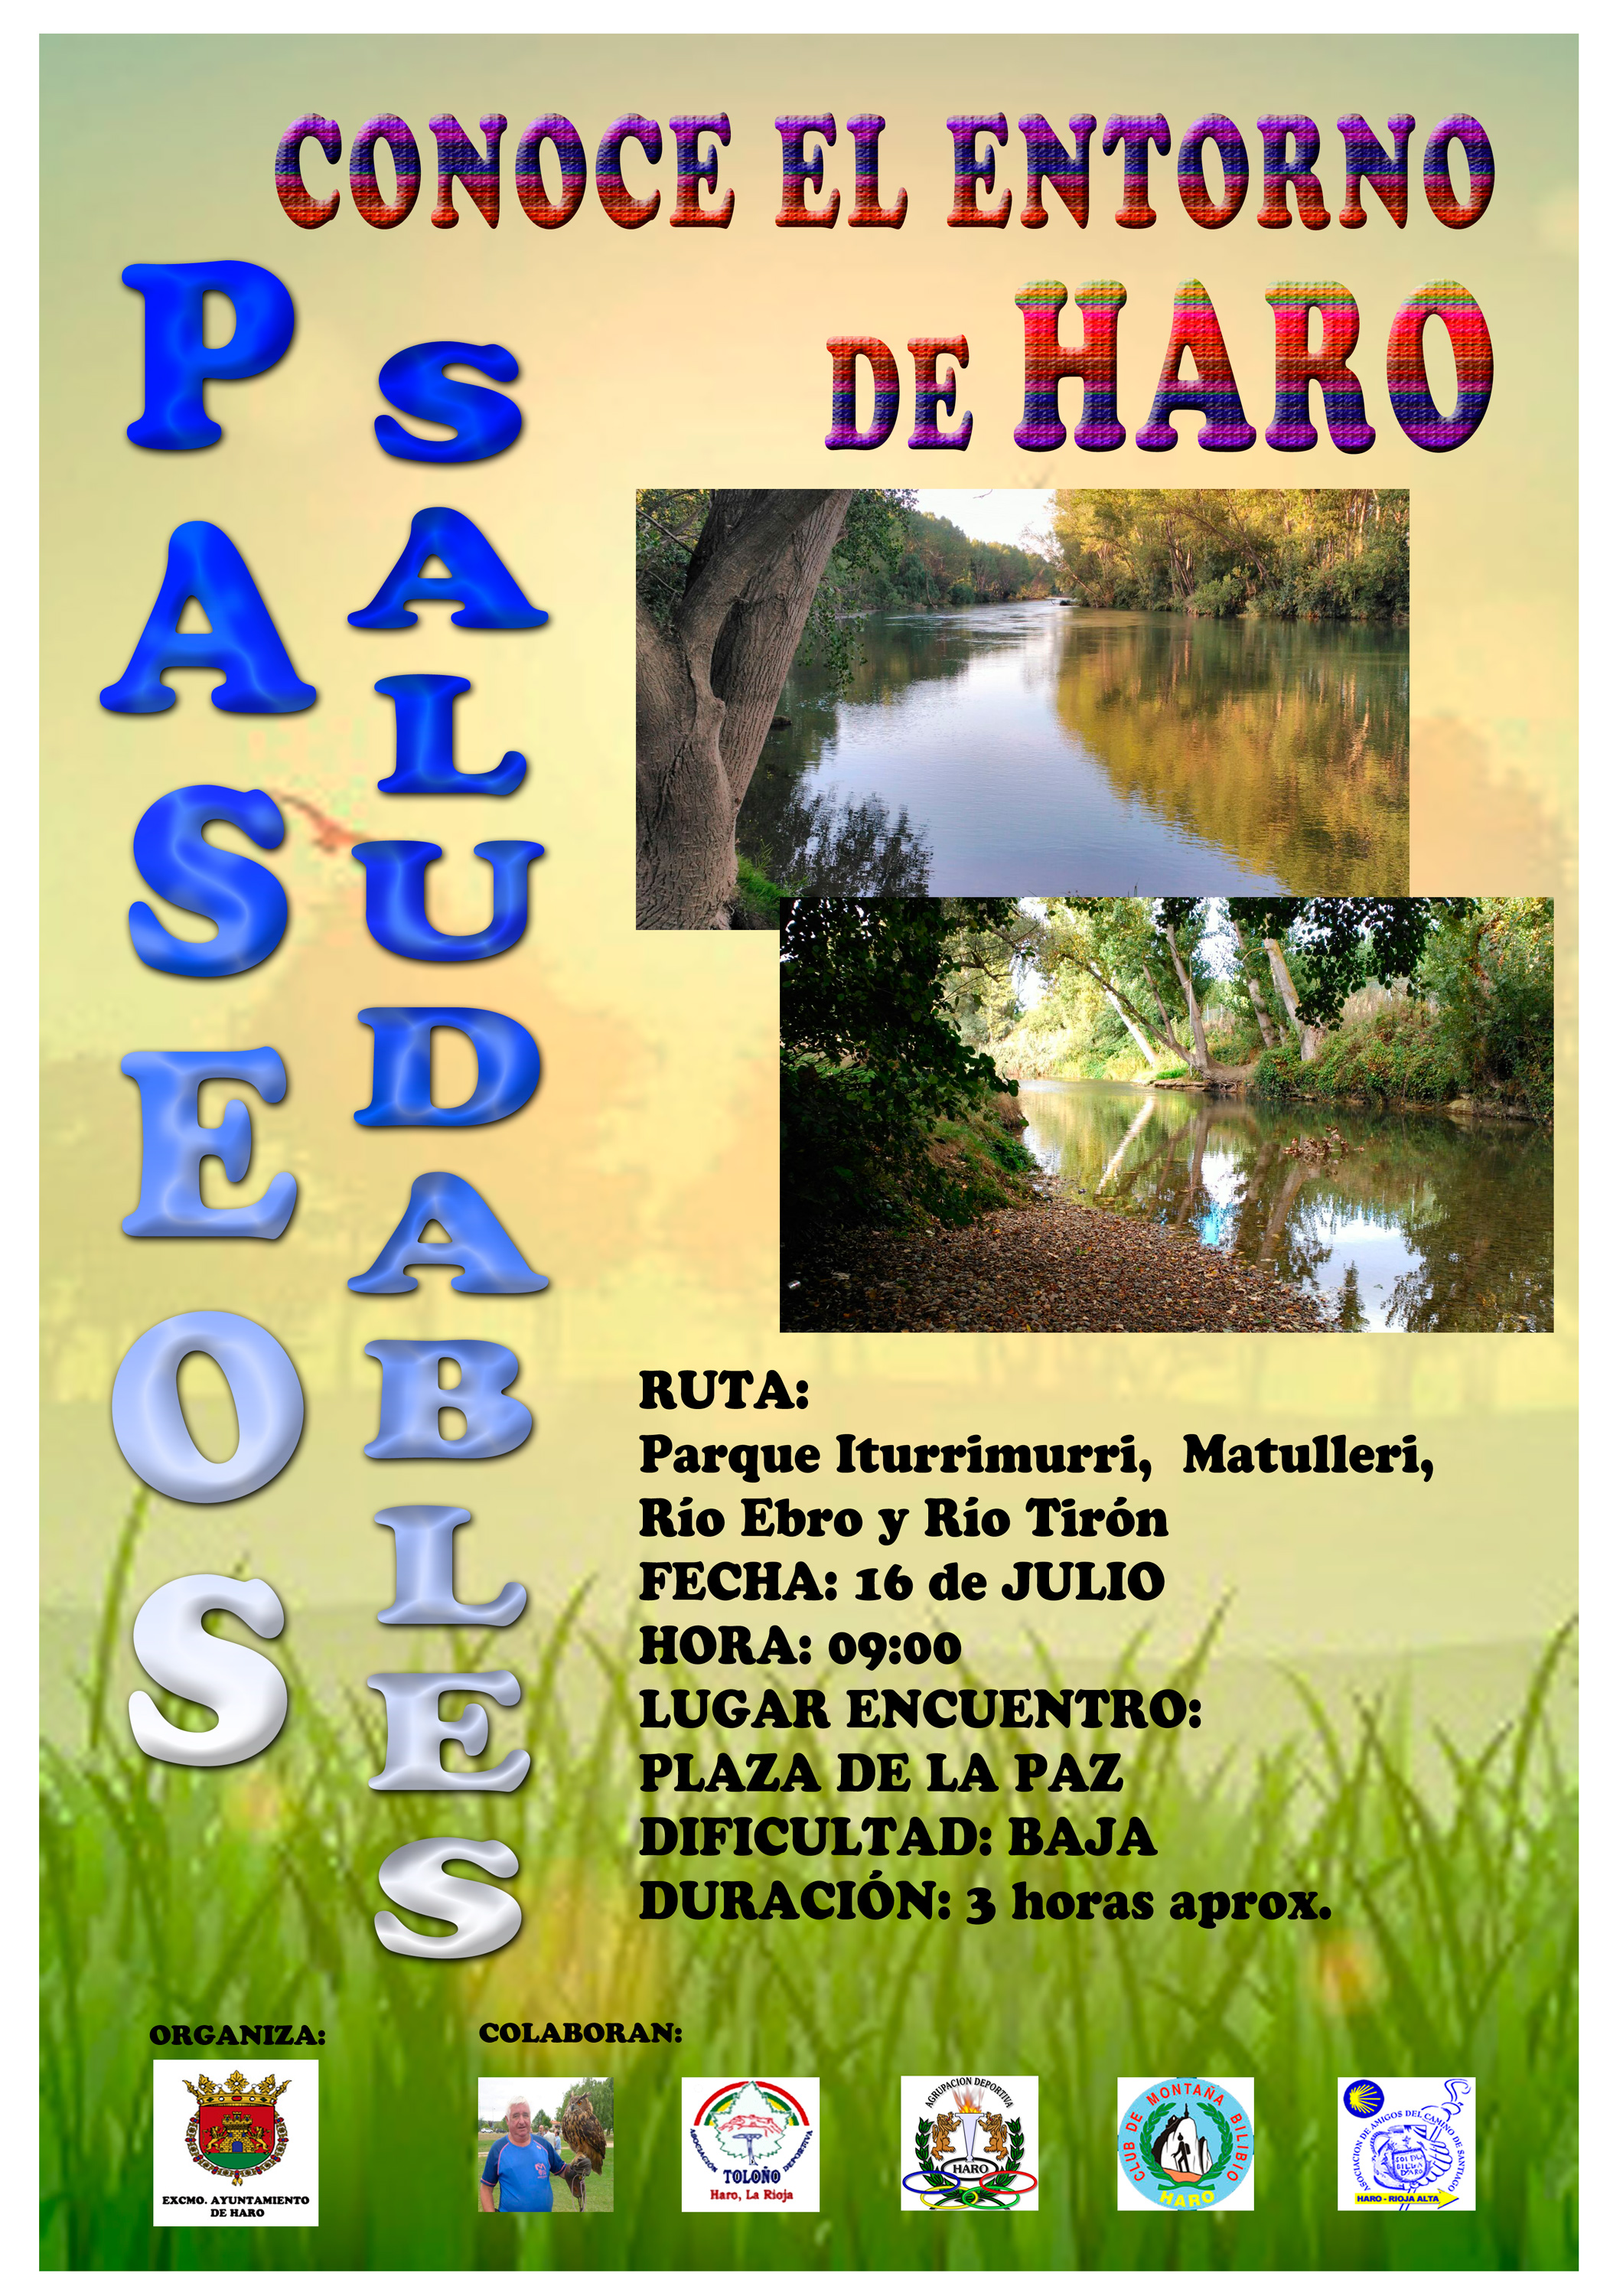 Este domingo ven a pasear por los ríos Ebro y Tirón 